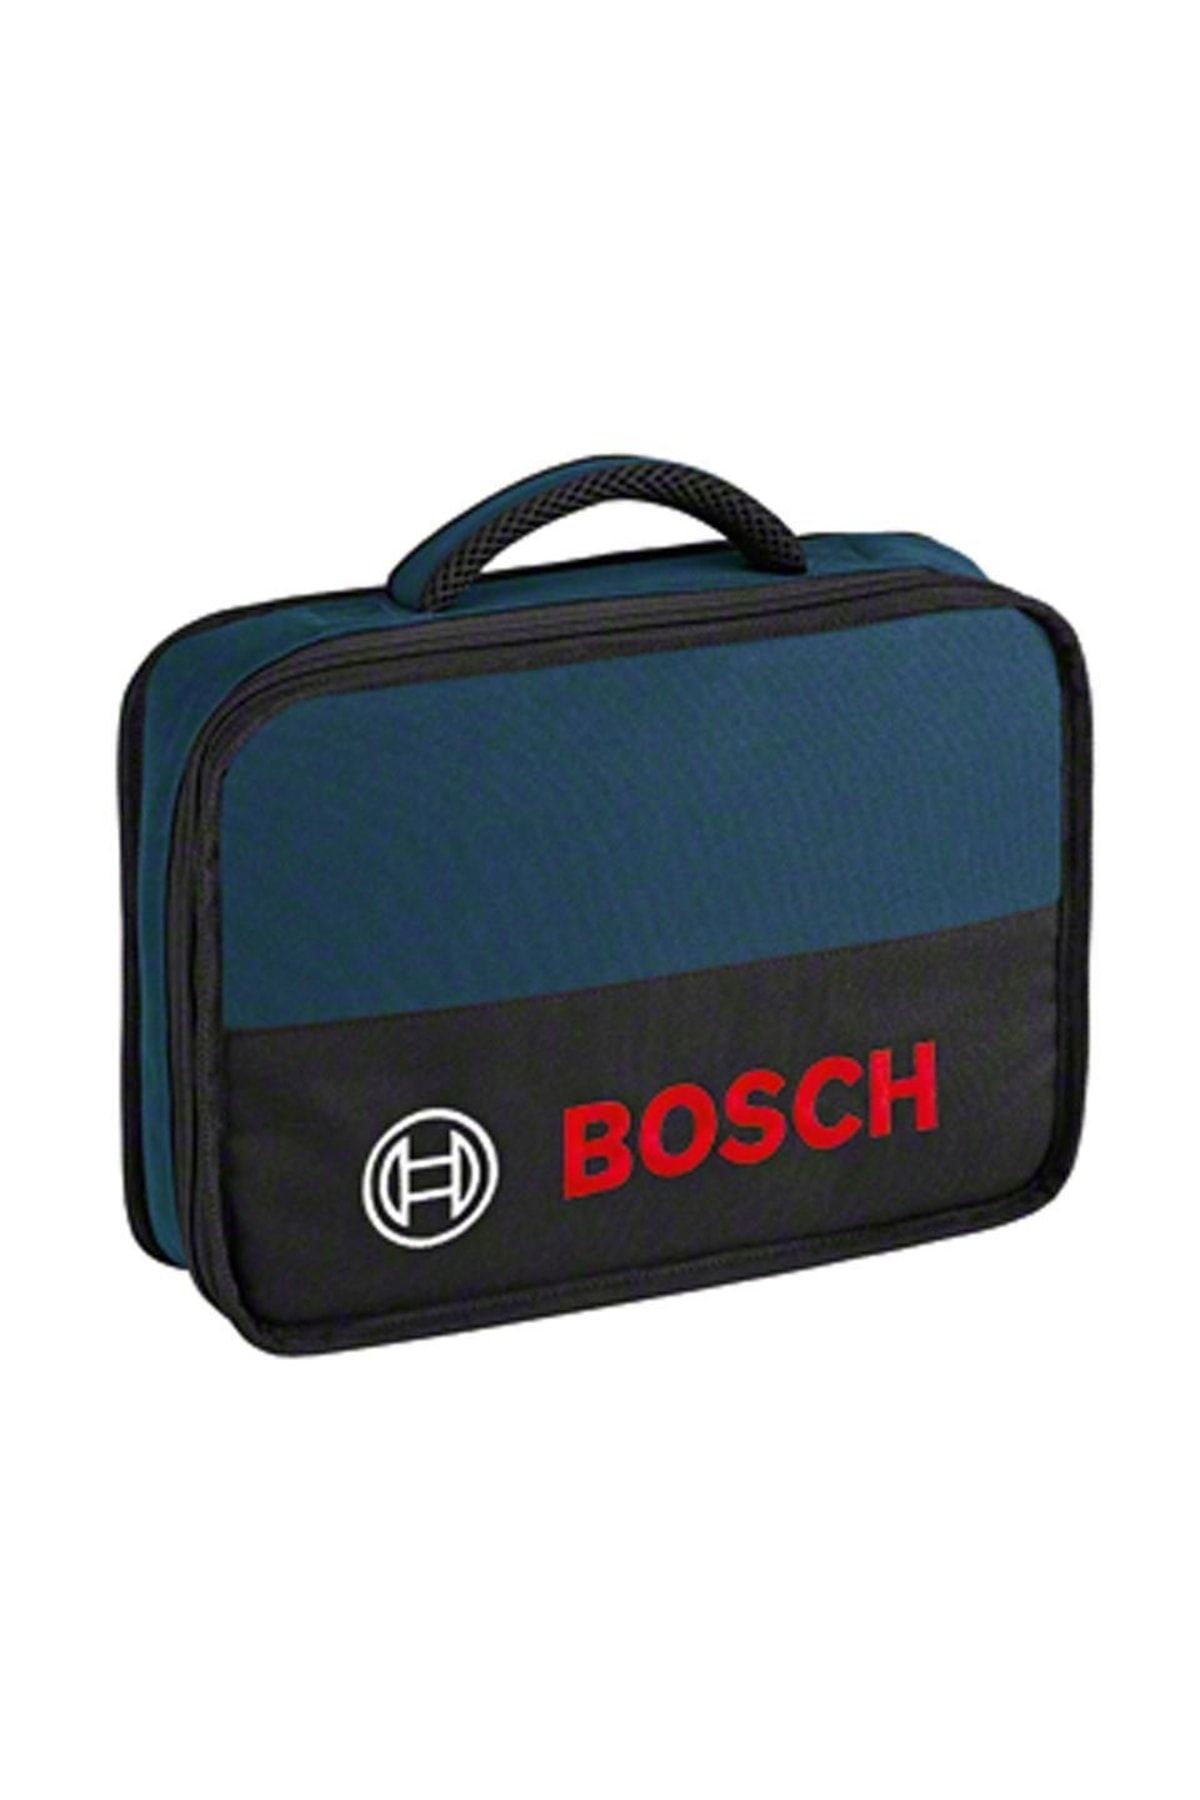 Bosch Mini Alet Taşıma Çantası 1600a003bg